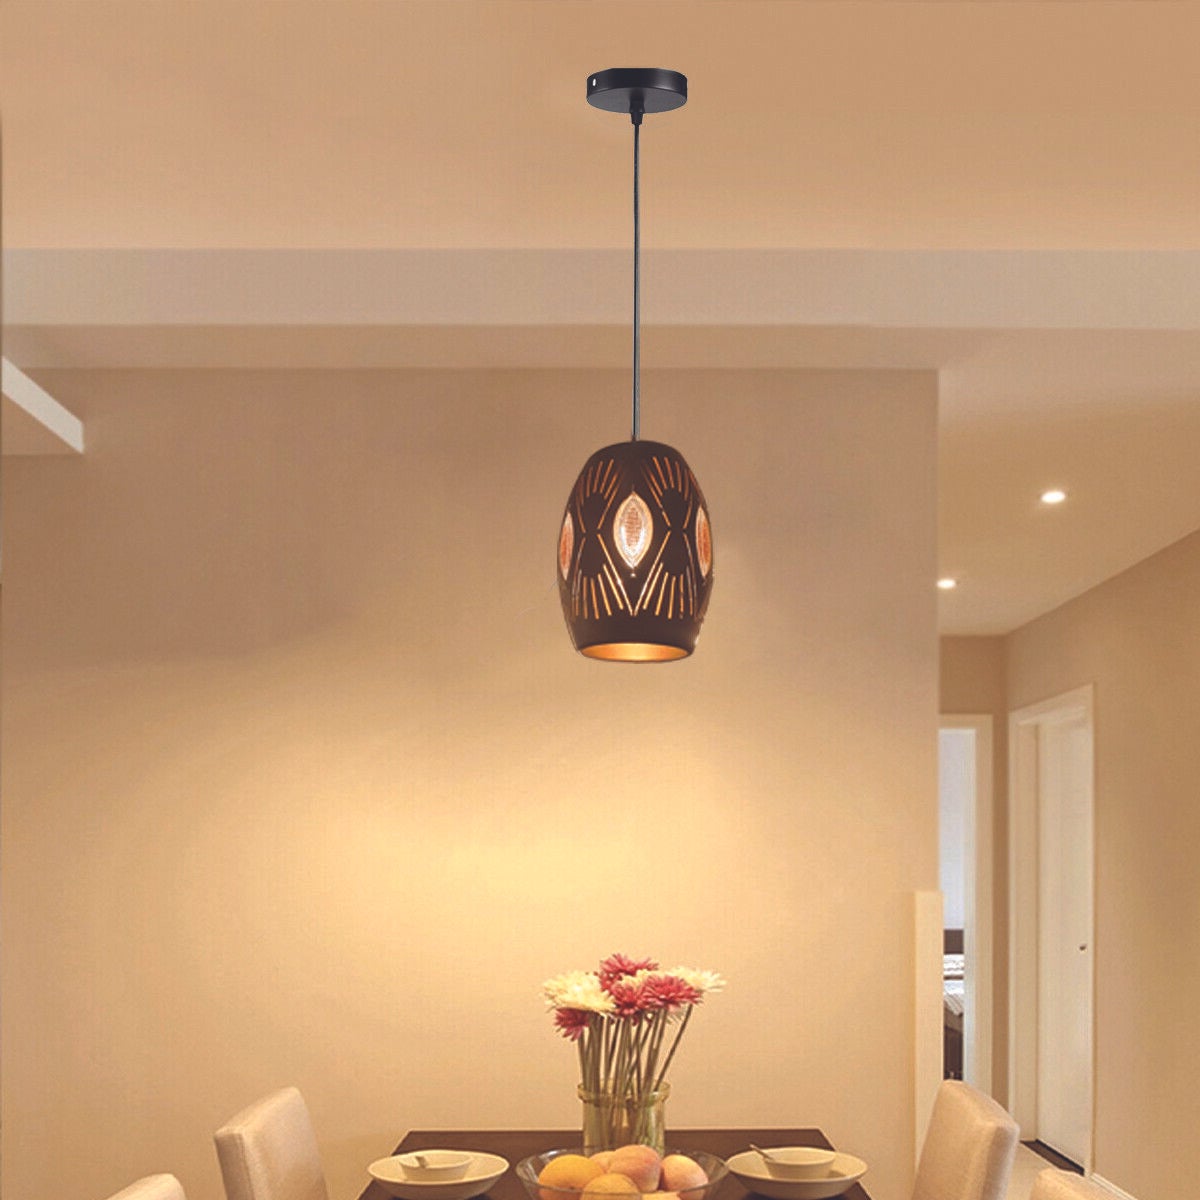 3 x Ceiling Pendant Light Fitting Pendant Chandelier Hanging Light~3402 - LEDSone UK Ltd